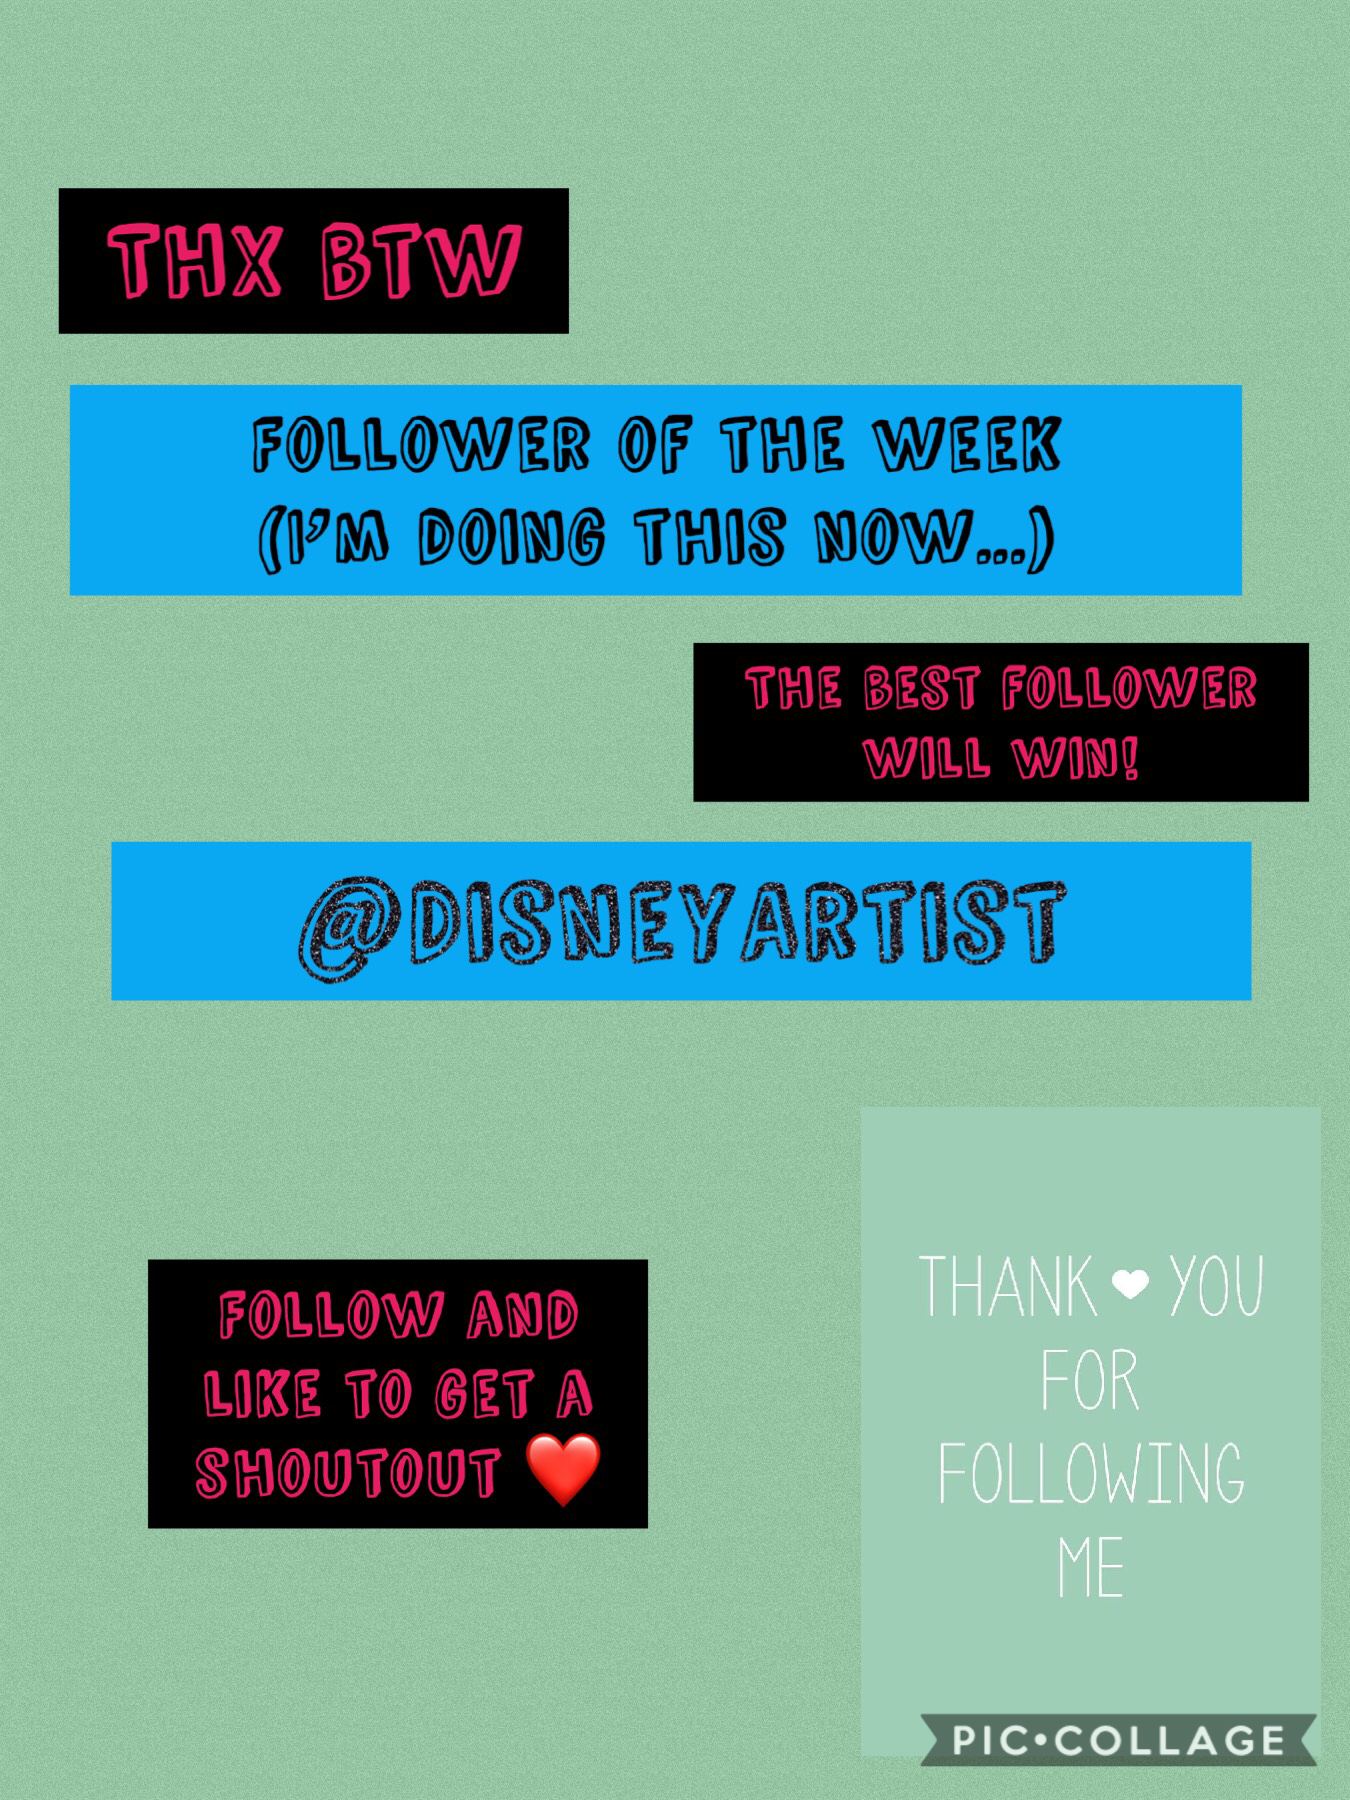 Click plz
Best follower of the day!
@DisneyArtist ❤️❤️❤️
Thx a lot!